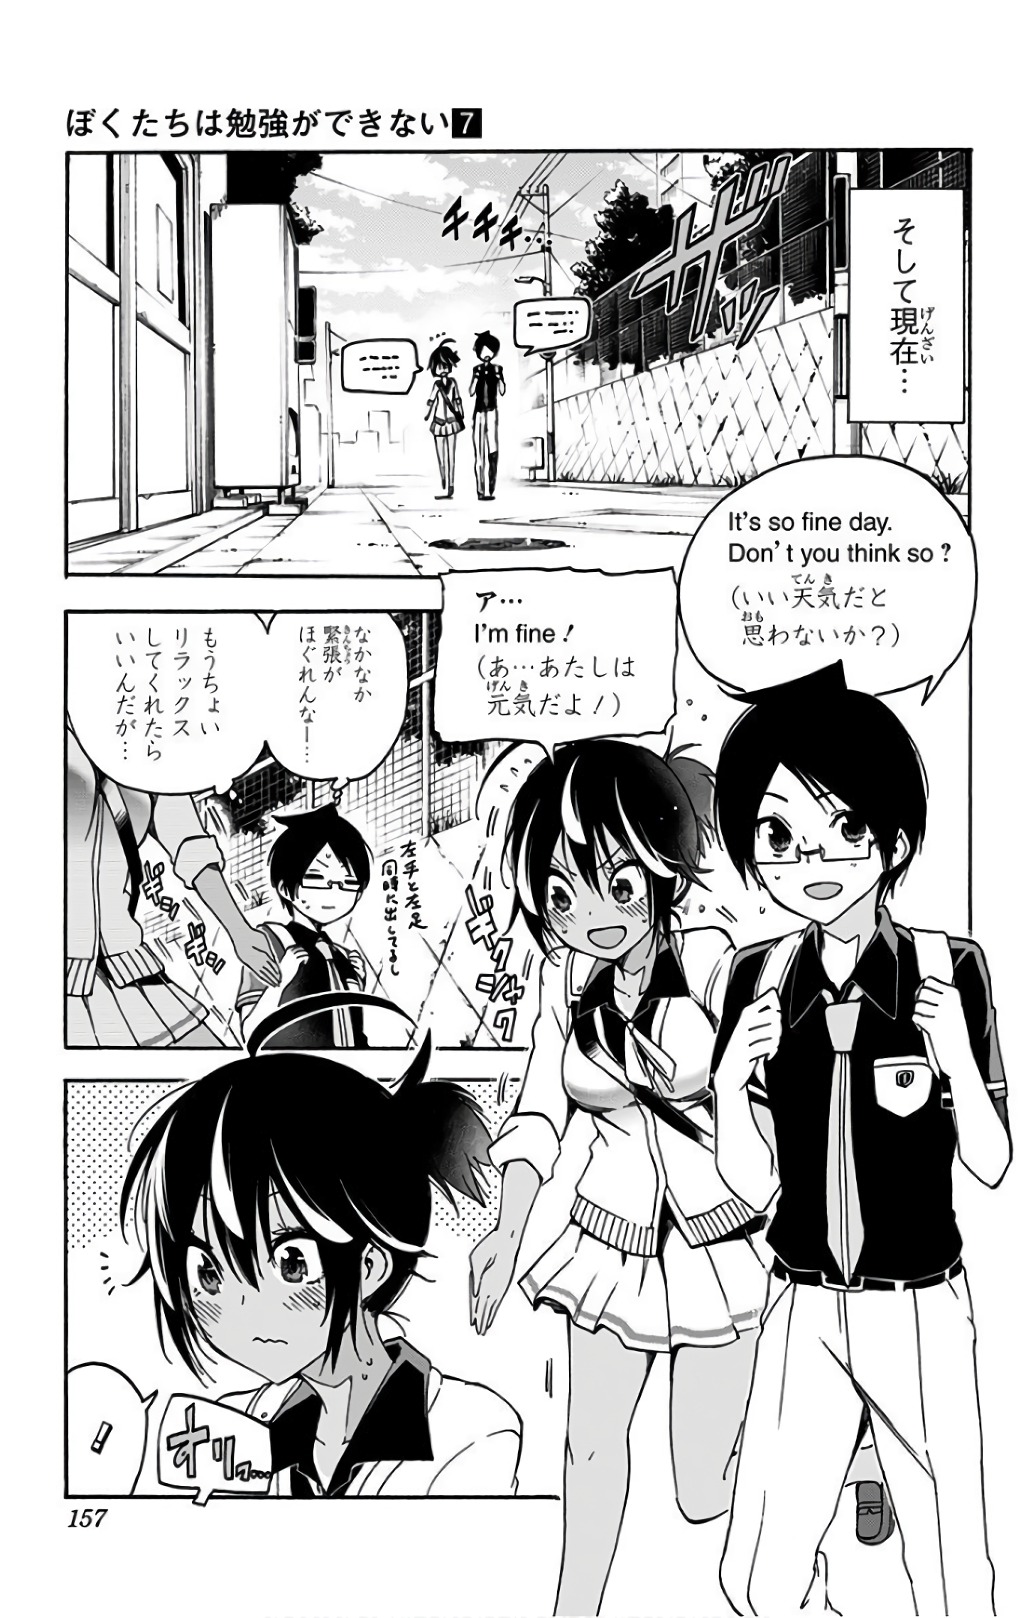 Bokutachi wa Benkyou ga Dekinai - Chapter 59 - Page 7